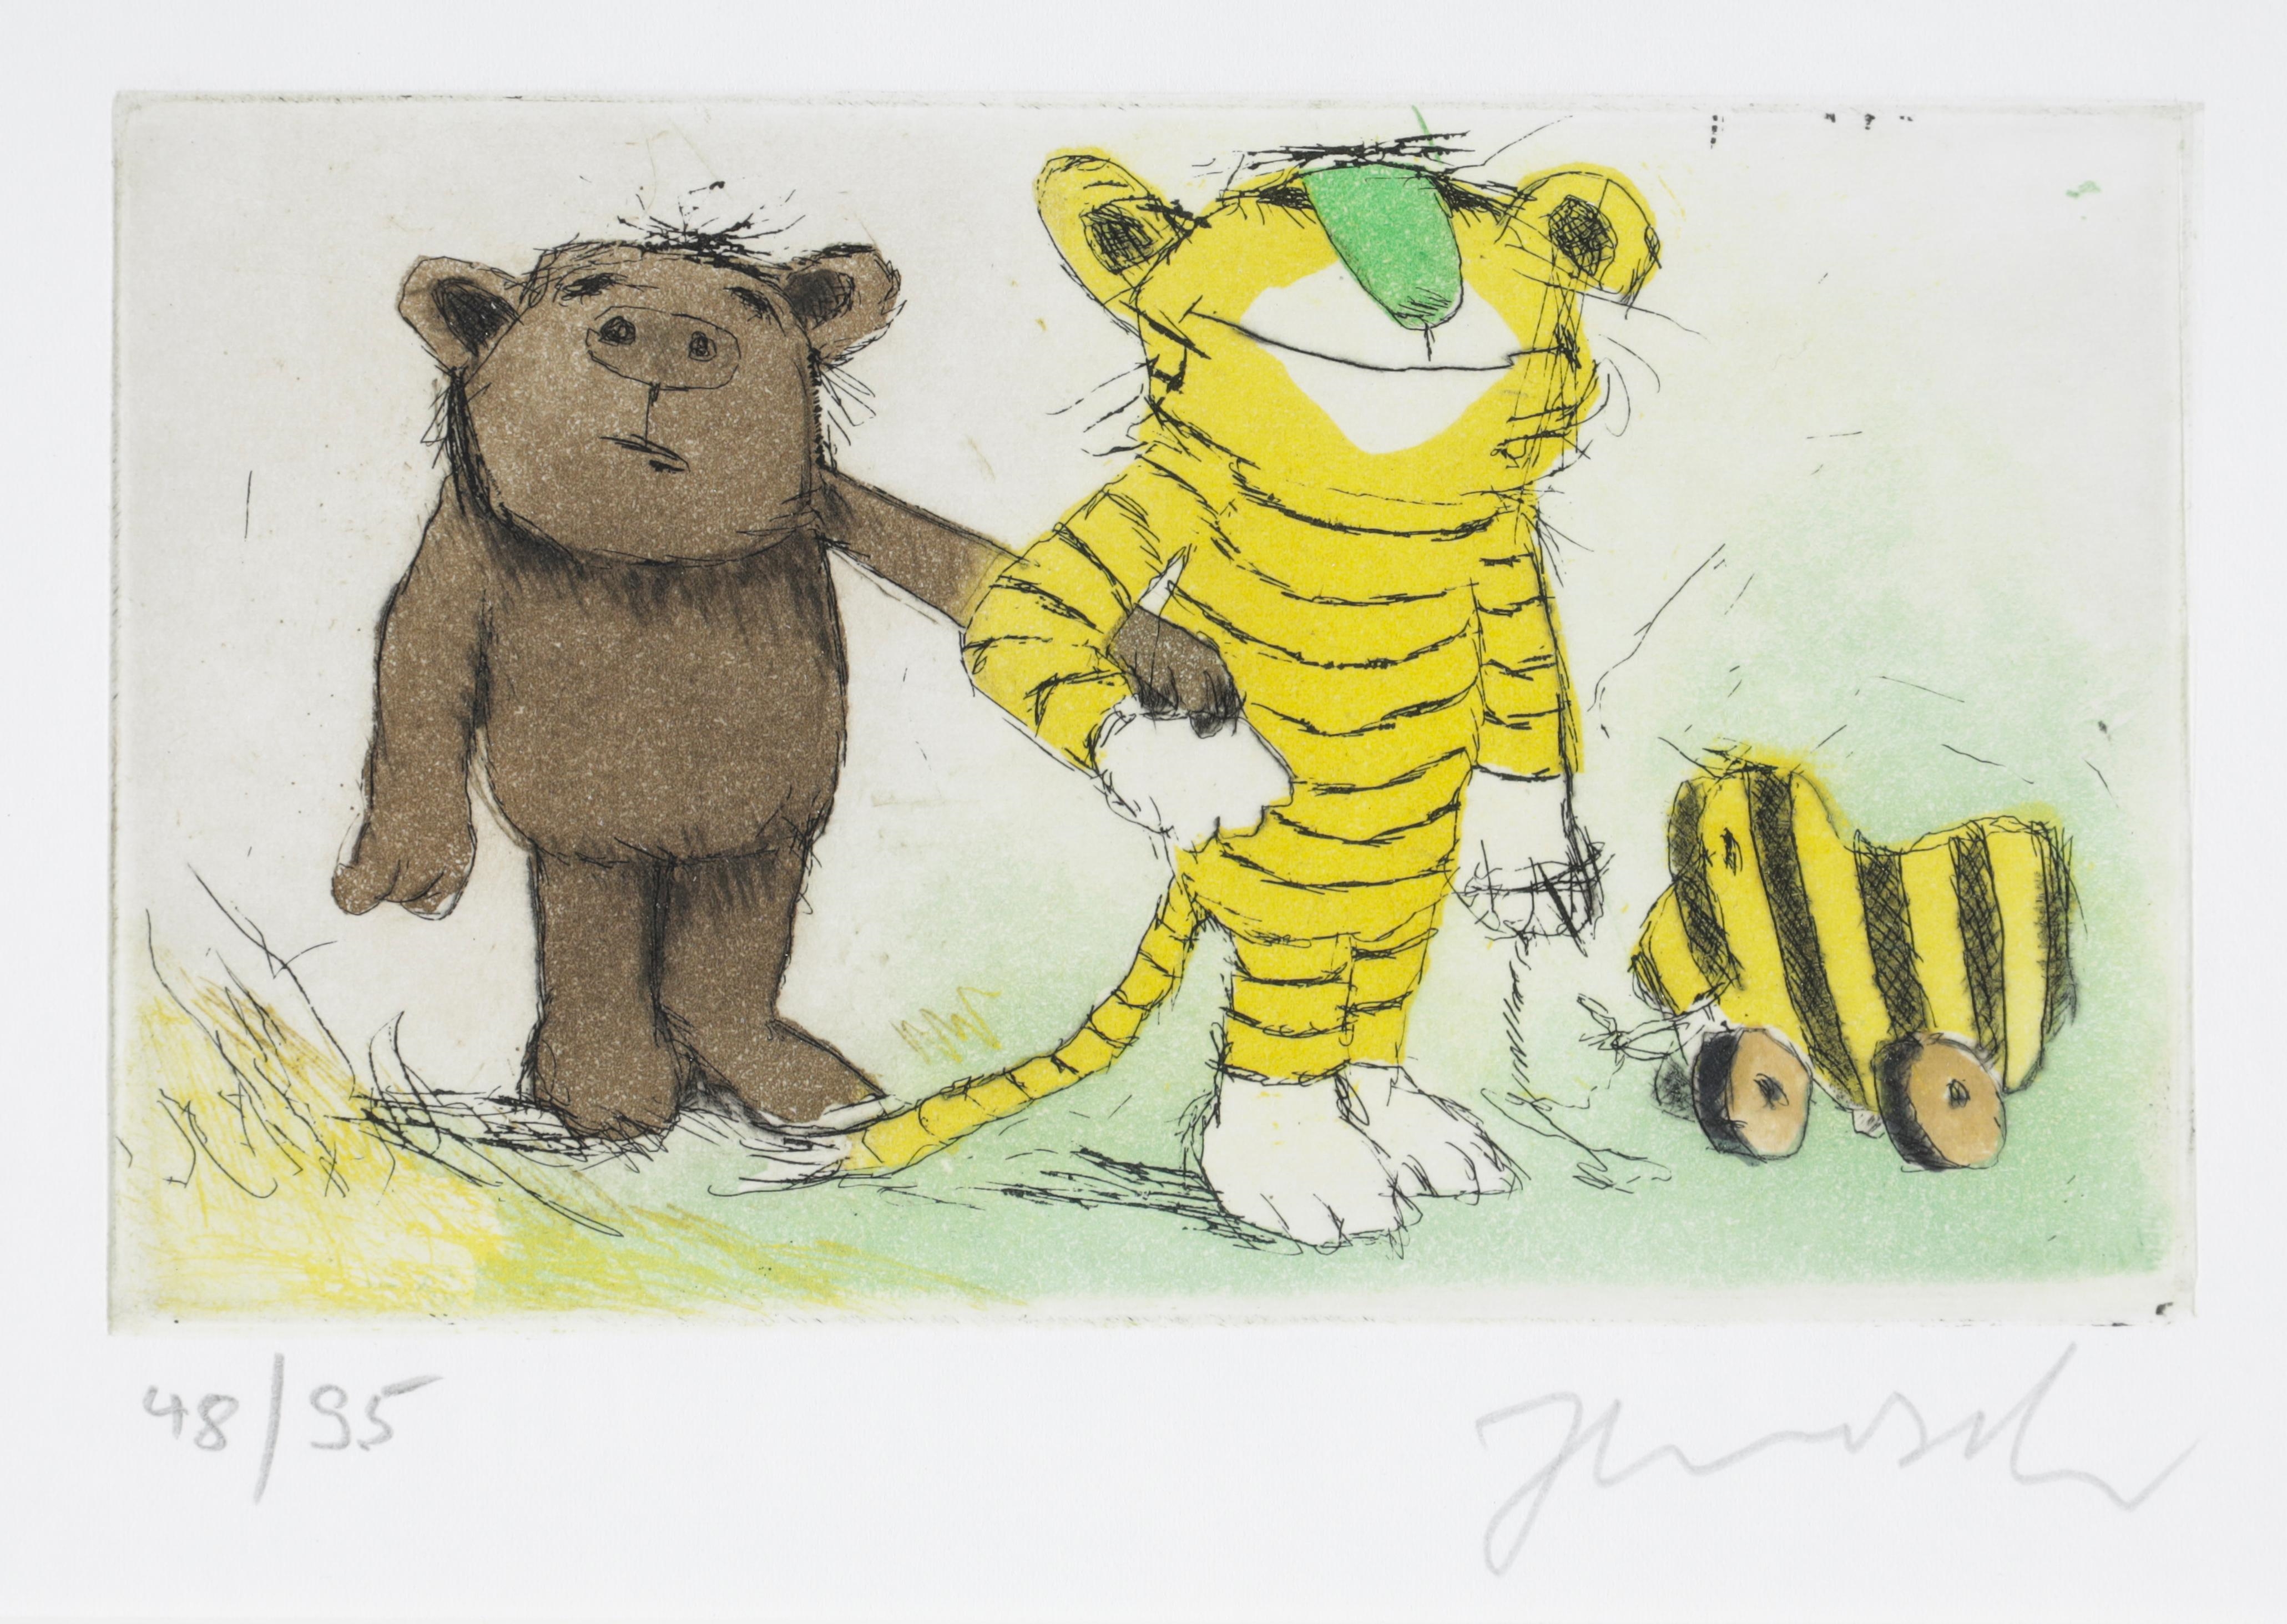 Bär, Tiger und Tigerente, handsigniert: Janosch, nummeriert: 48/95, Radierung in Farbe auf Velin, Druckplattengröße ca by Janosch, 1931